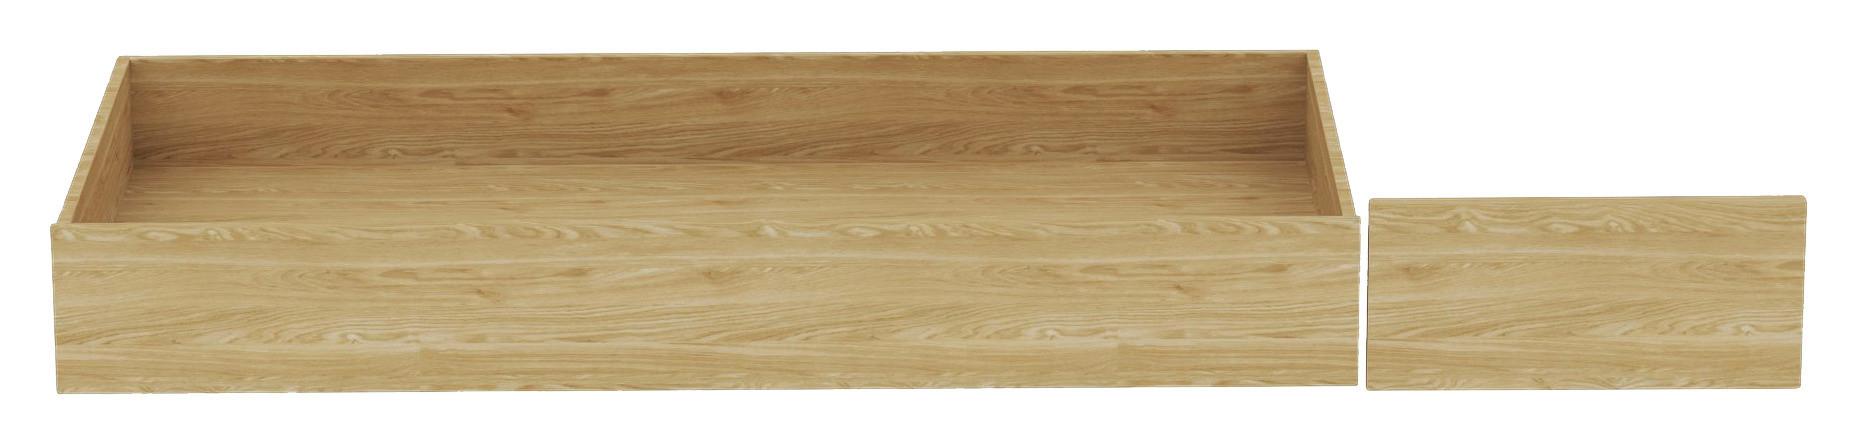 Vysouvací Díl Pod Postel Unit - barvy dubu, Konvenční, kompozitní dřevo (149,5/21/68,5cm) - Ondega